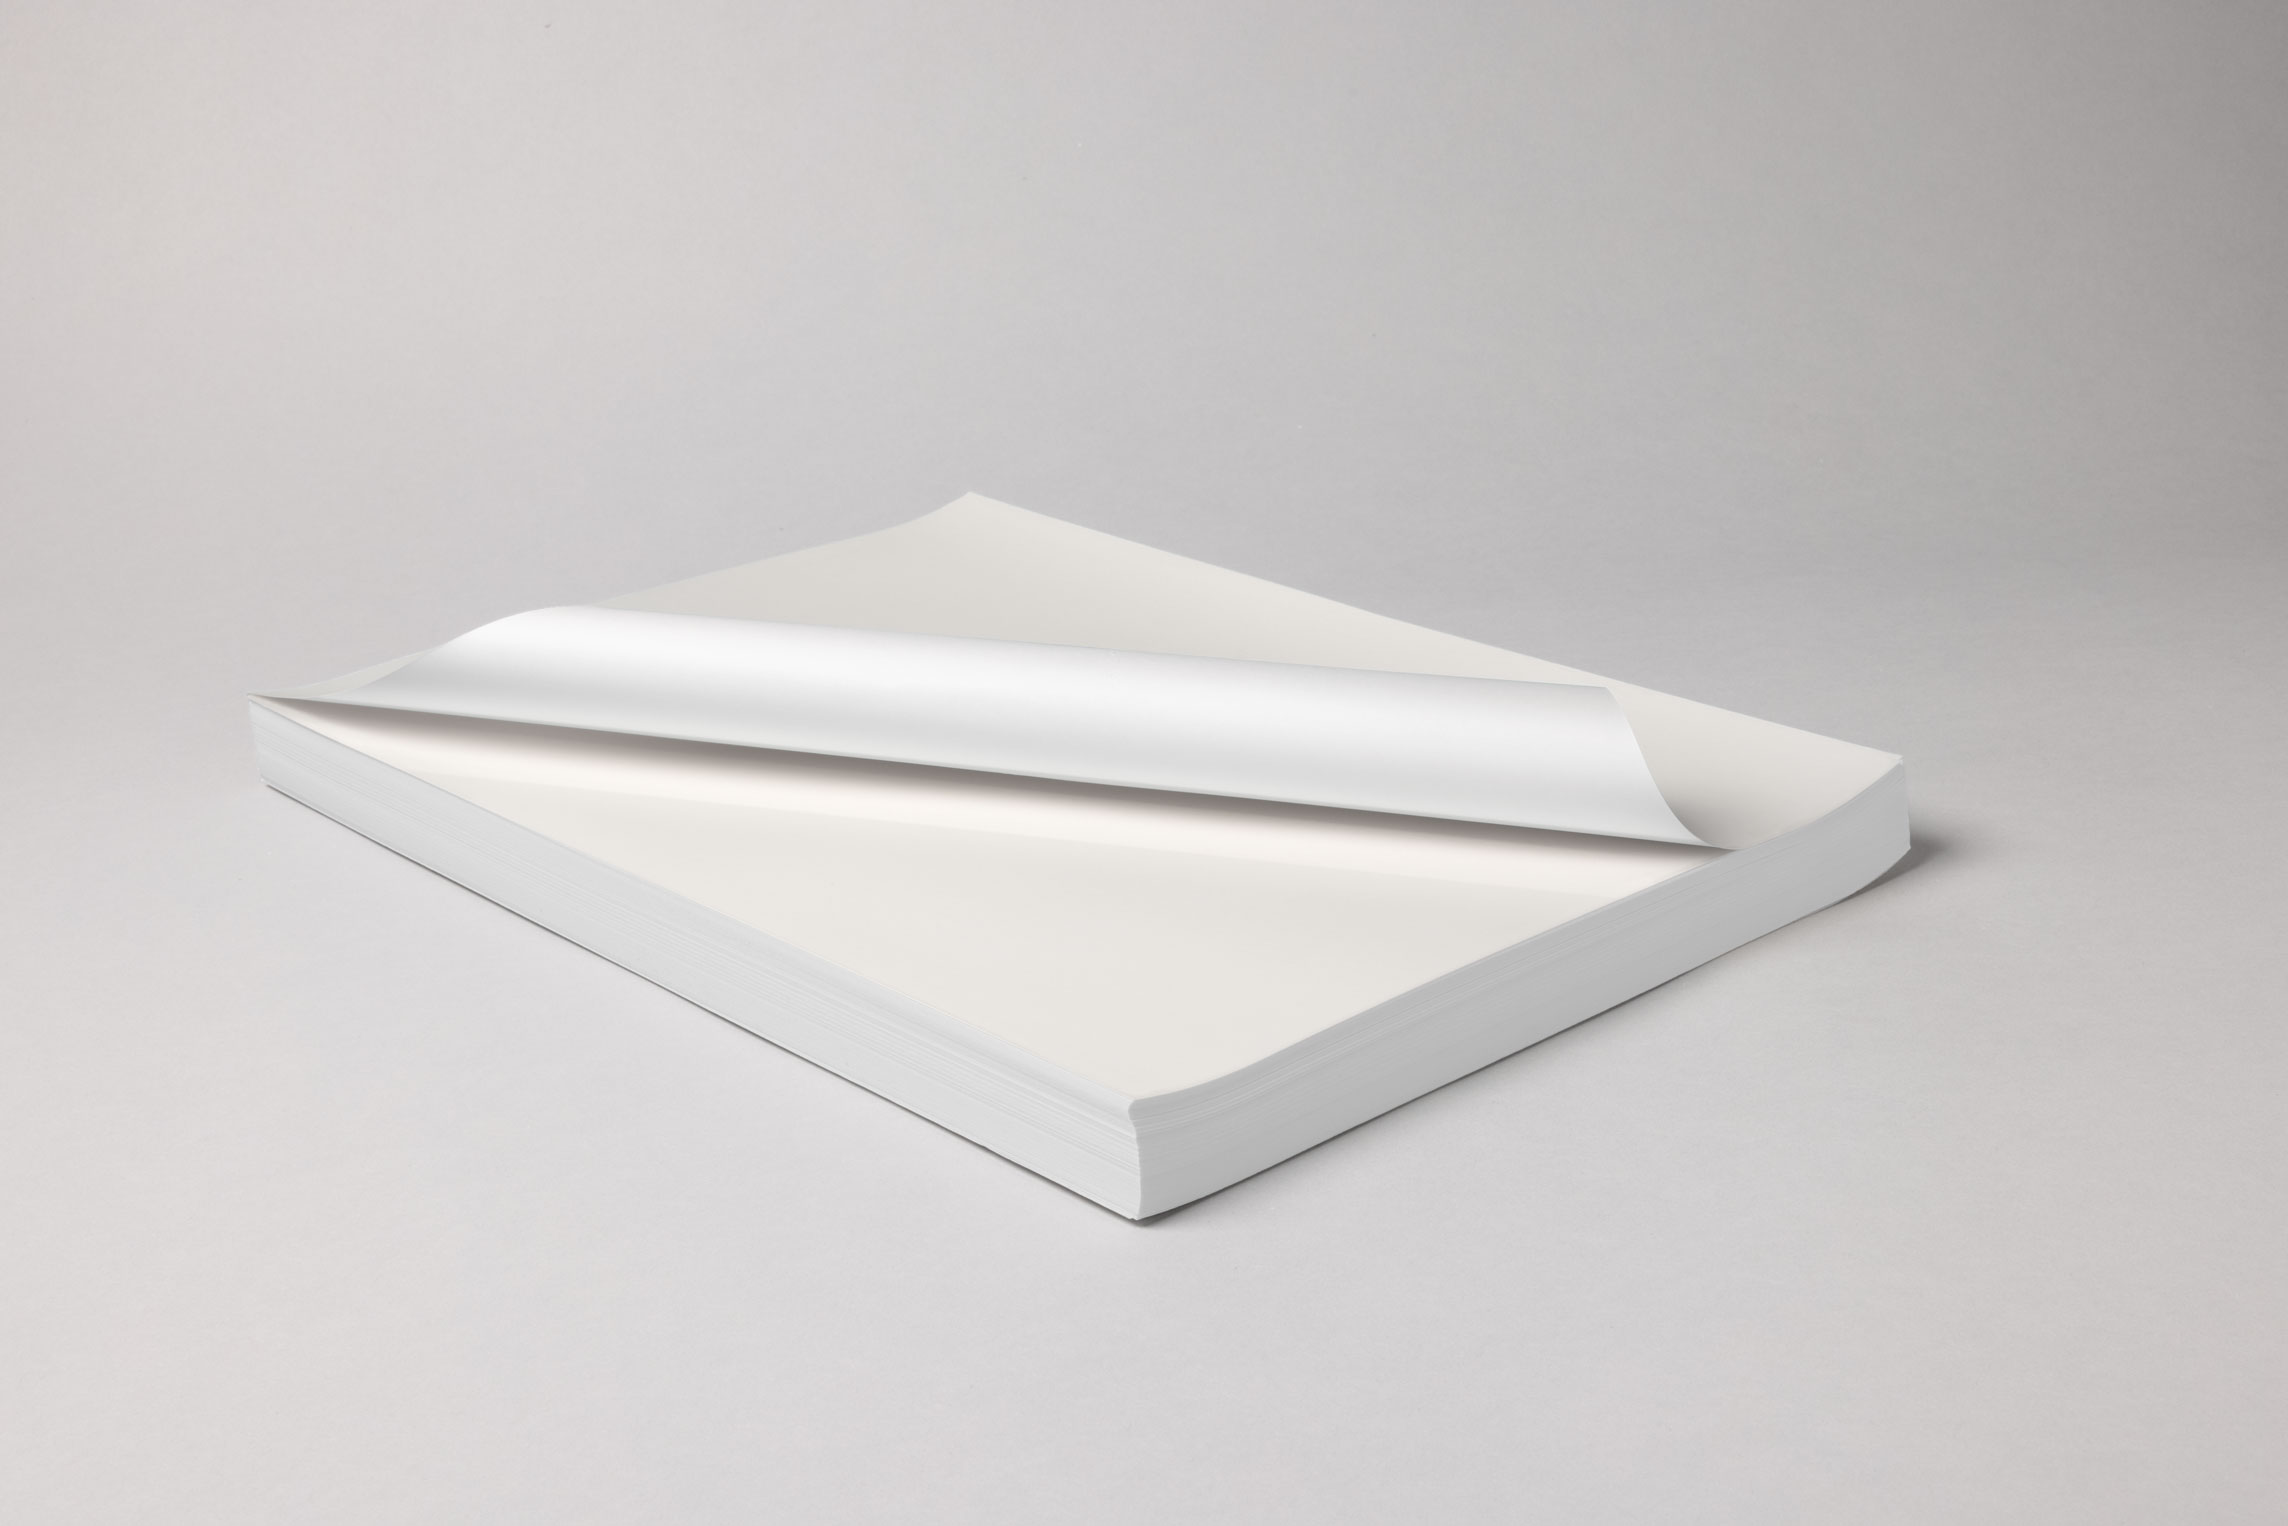 Ceramictoner Abziehbildpapier MZCal eignet sich für die Produktion von Decals. Es eignet sich für alle Anwendungsbereiche und ist in DIN A4, DIN A3 oder DIN A3 Übergröße erhältlich.